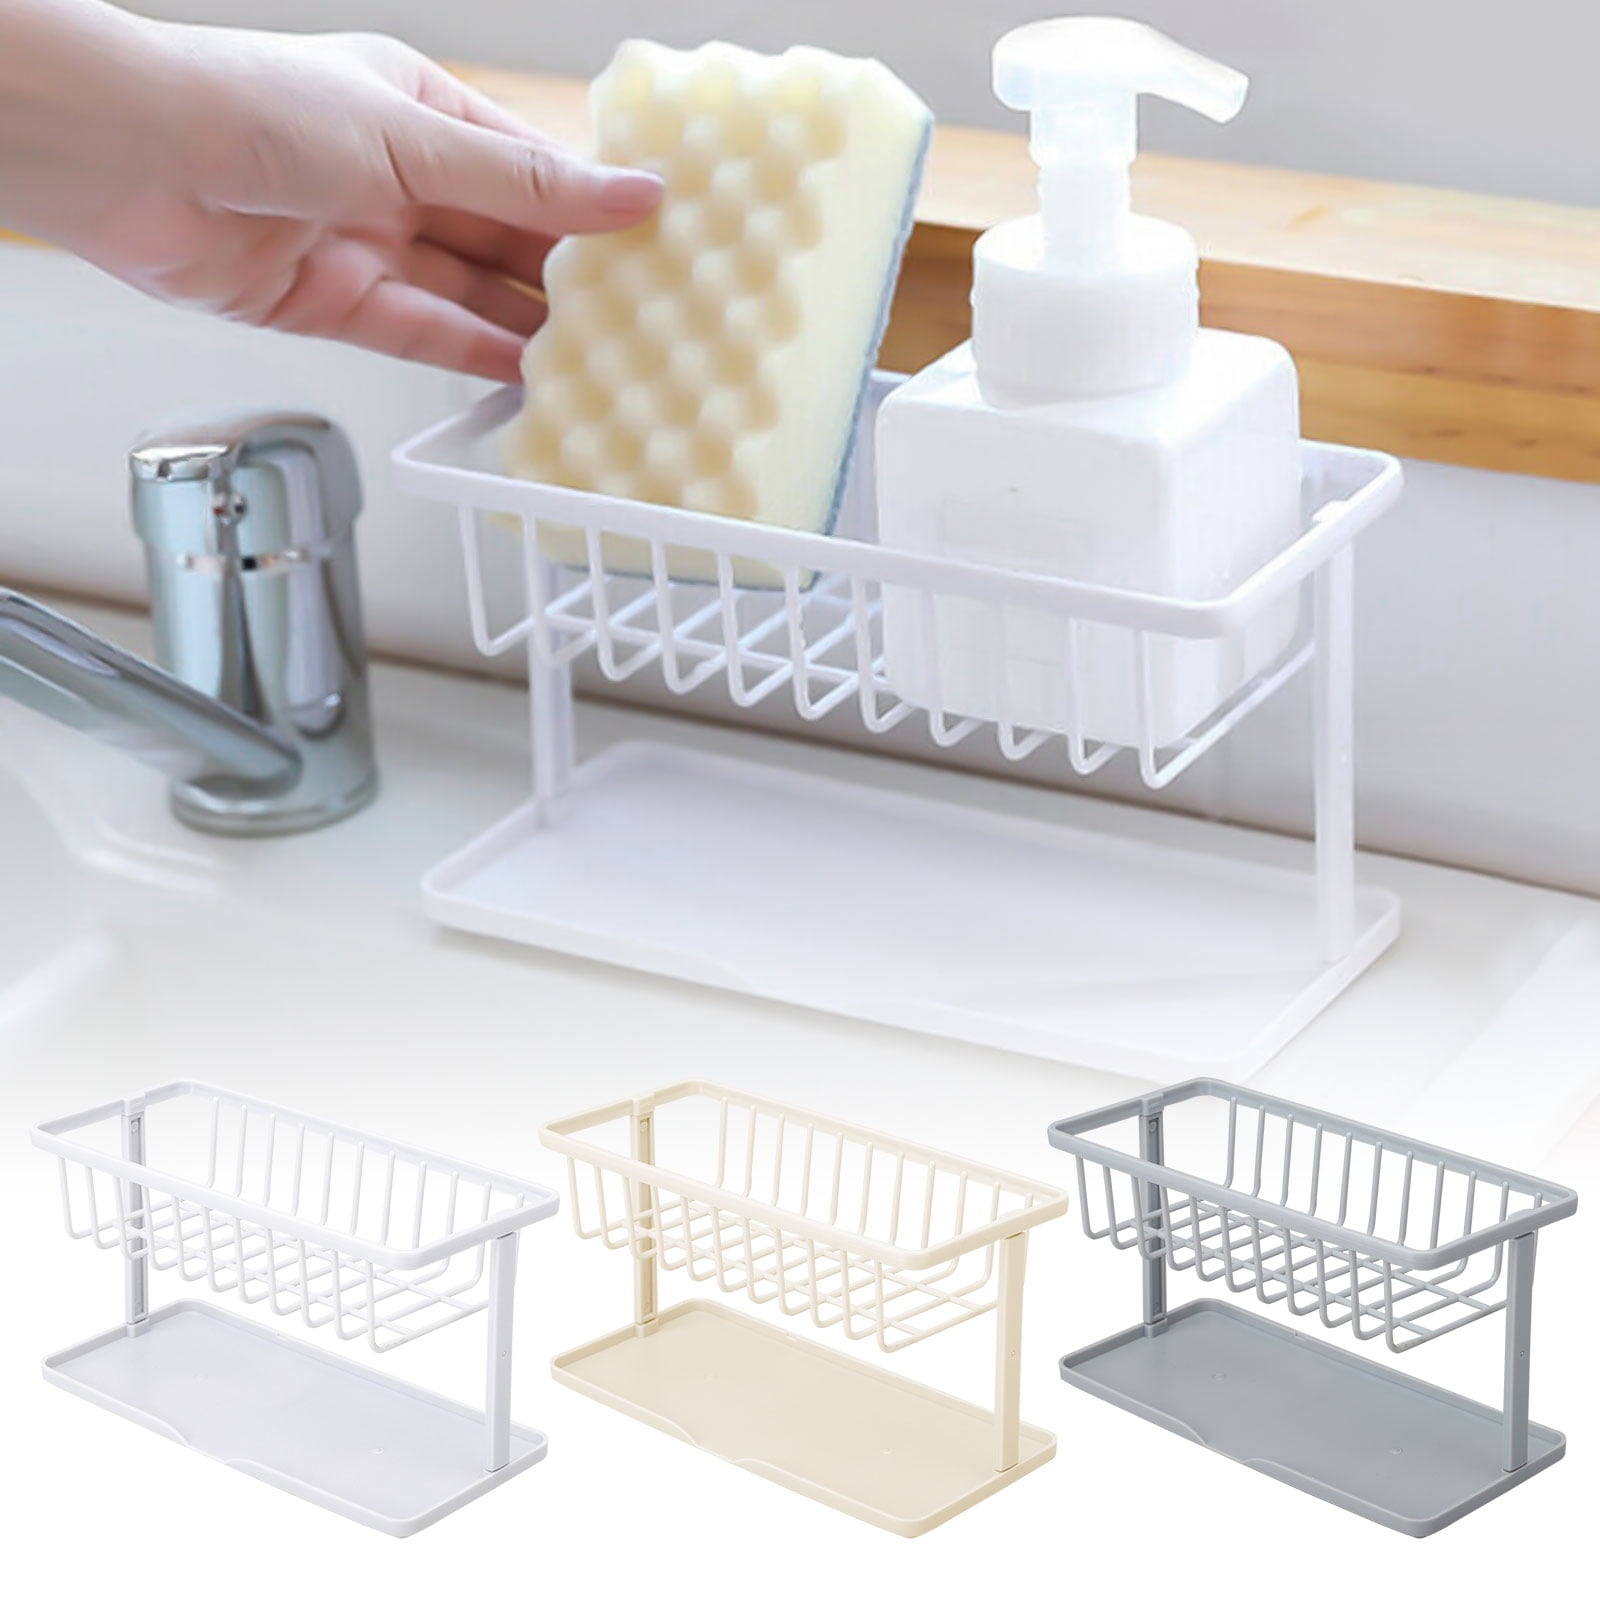 Pro Sink Drainer Washing Up Plastic Caddy Sink Tidy Kitchen Utensil Holder Cream 